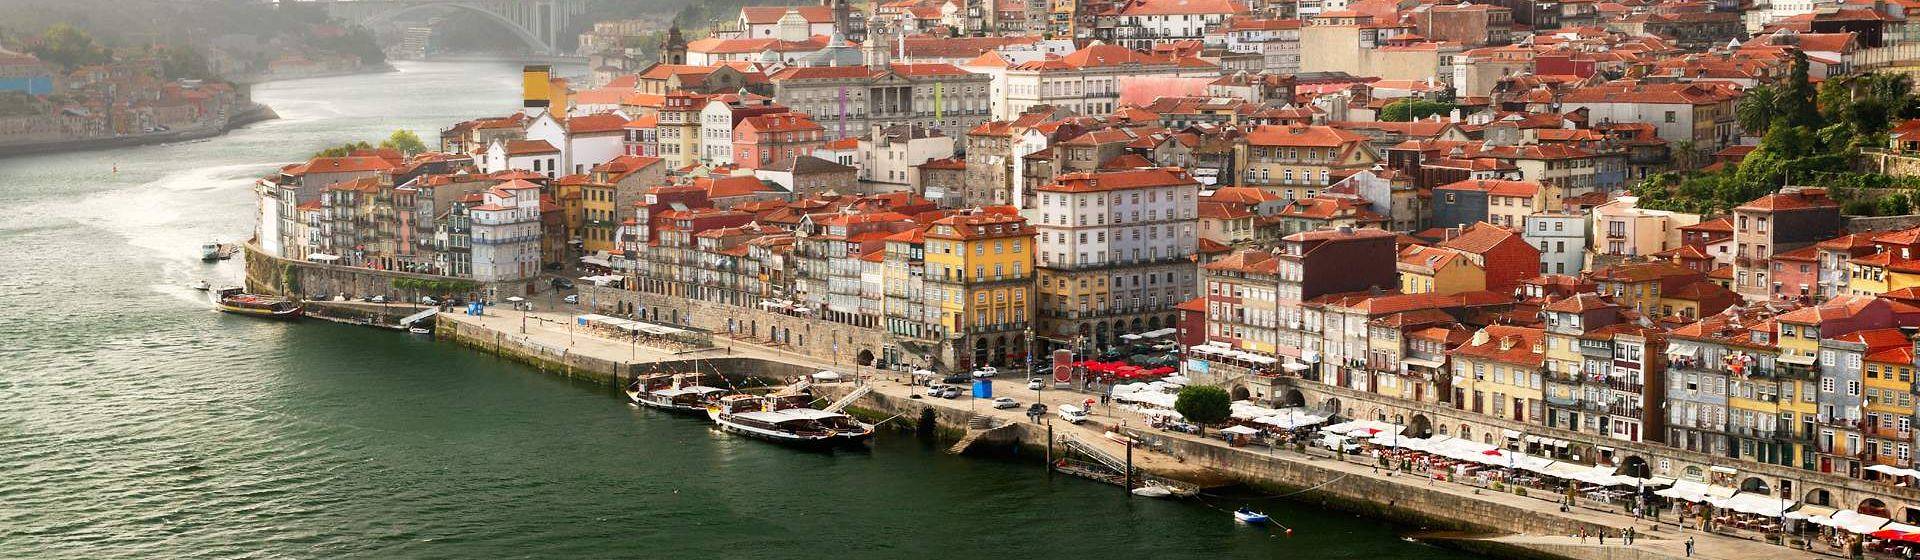 Holidays to Porto Image